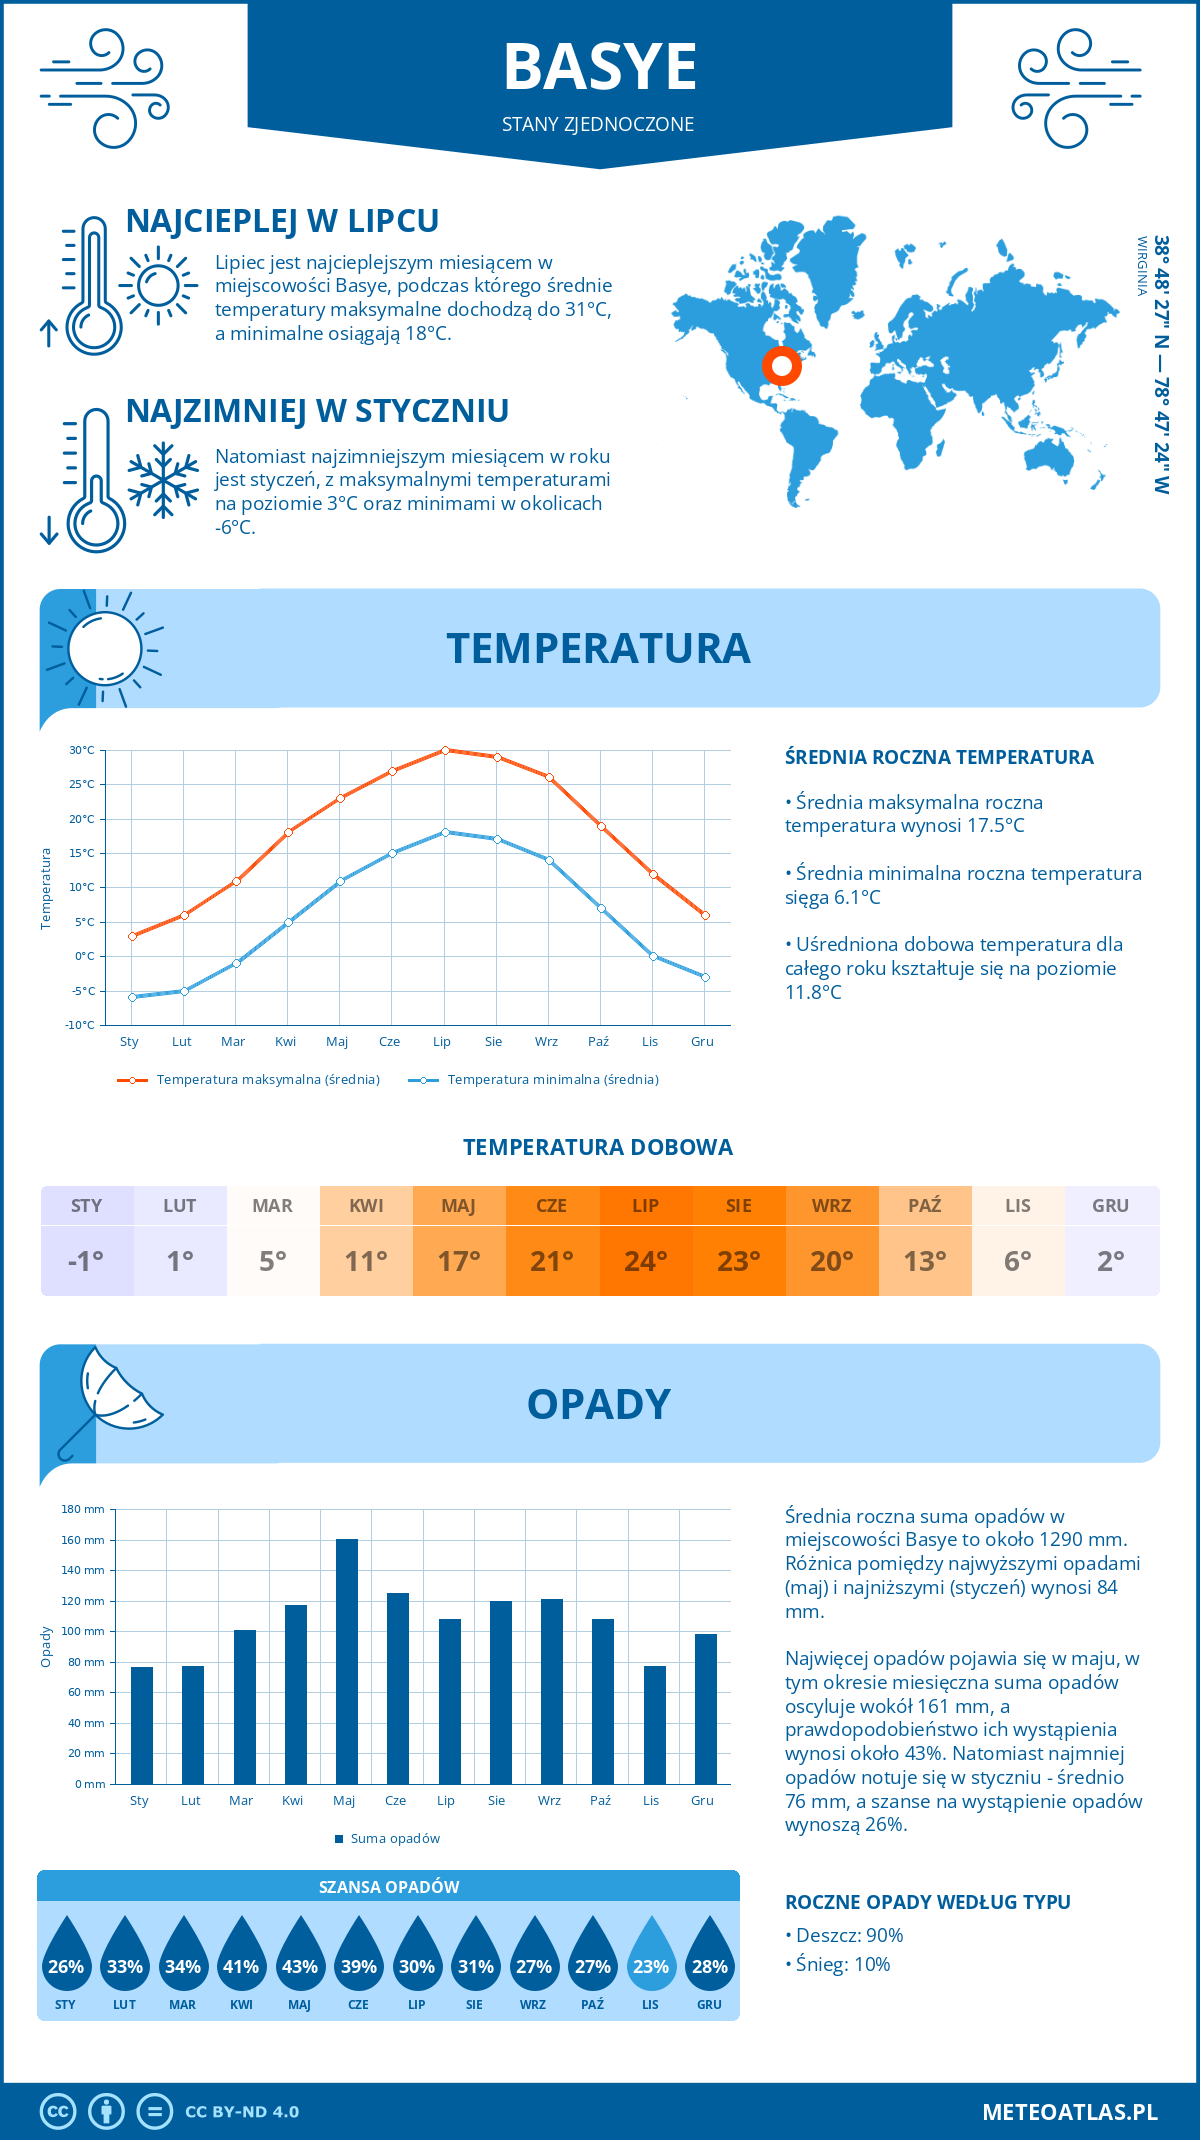 Pogoda Basye (Stany Zjednoczone). Temperatura oraz opady.